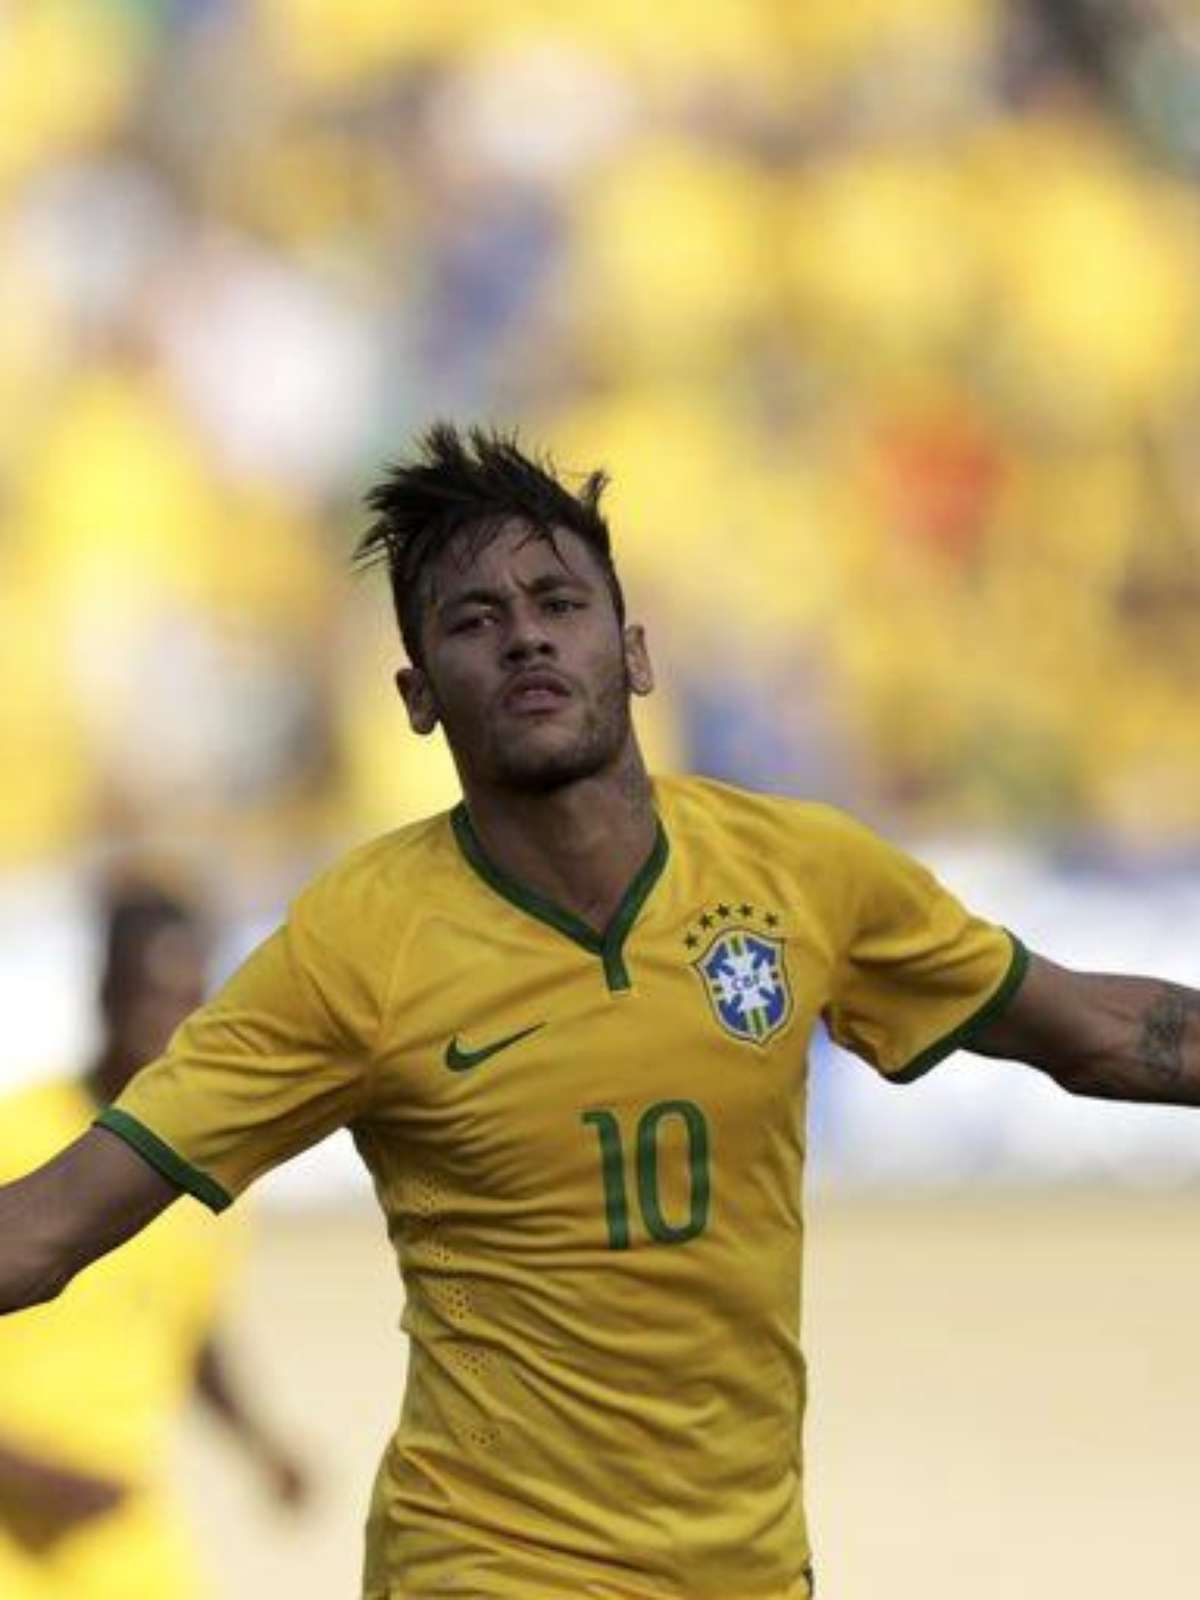 PES 2012 ganha capa exclusiva com Neymar no Brasil e tem preço revelado